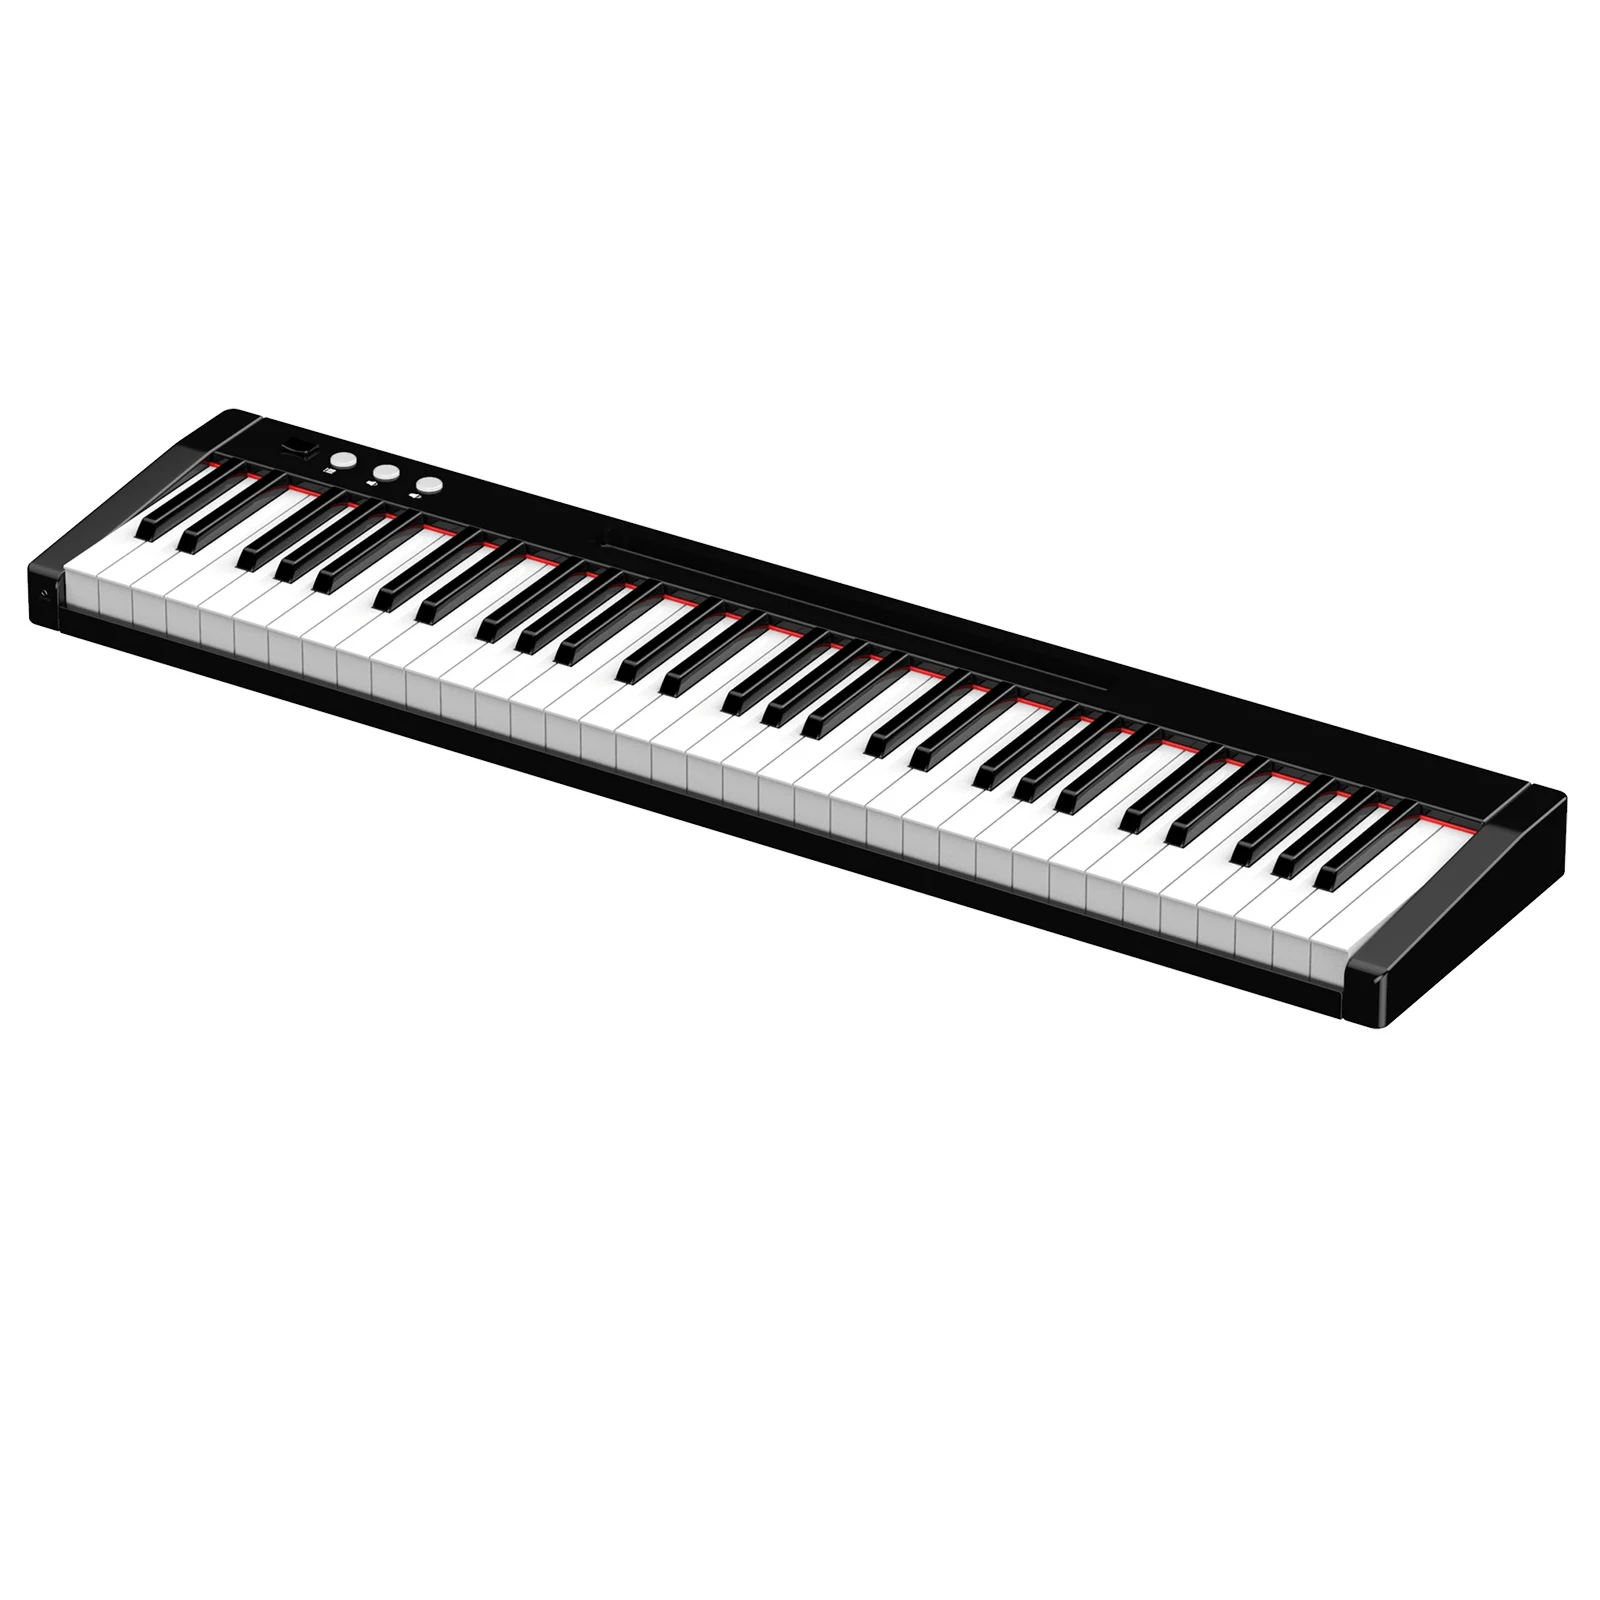 

Портативное пианино, клавиатура для пианино 61 клавиши, электронная клавиатура для пианино, цифровое пианино 128 ритмов, 140 тонов